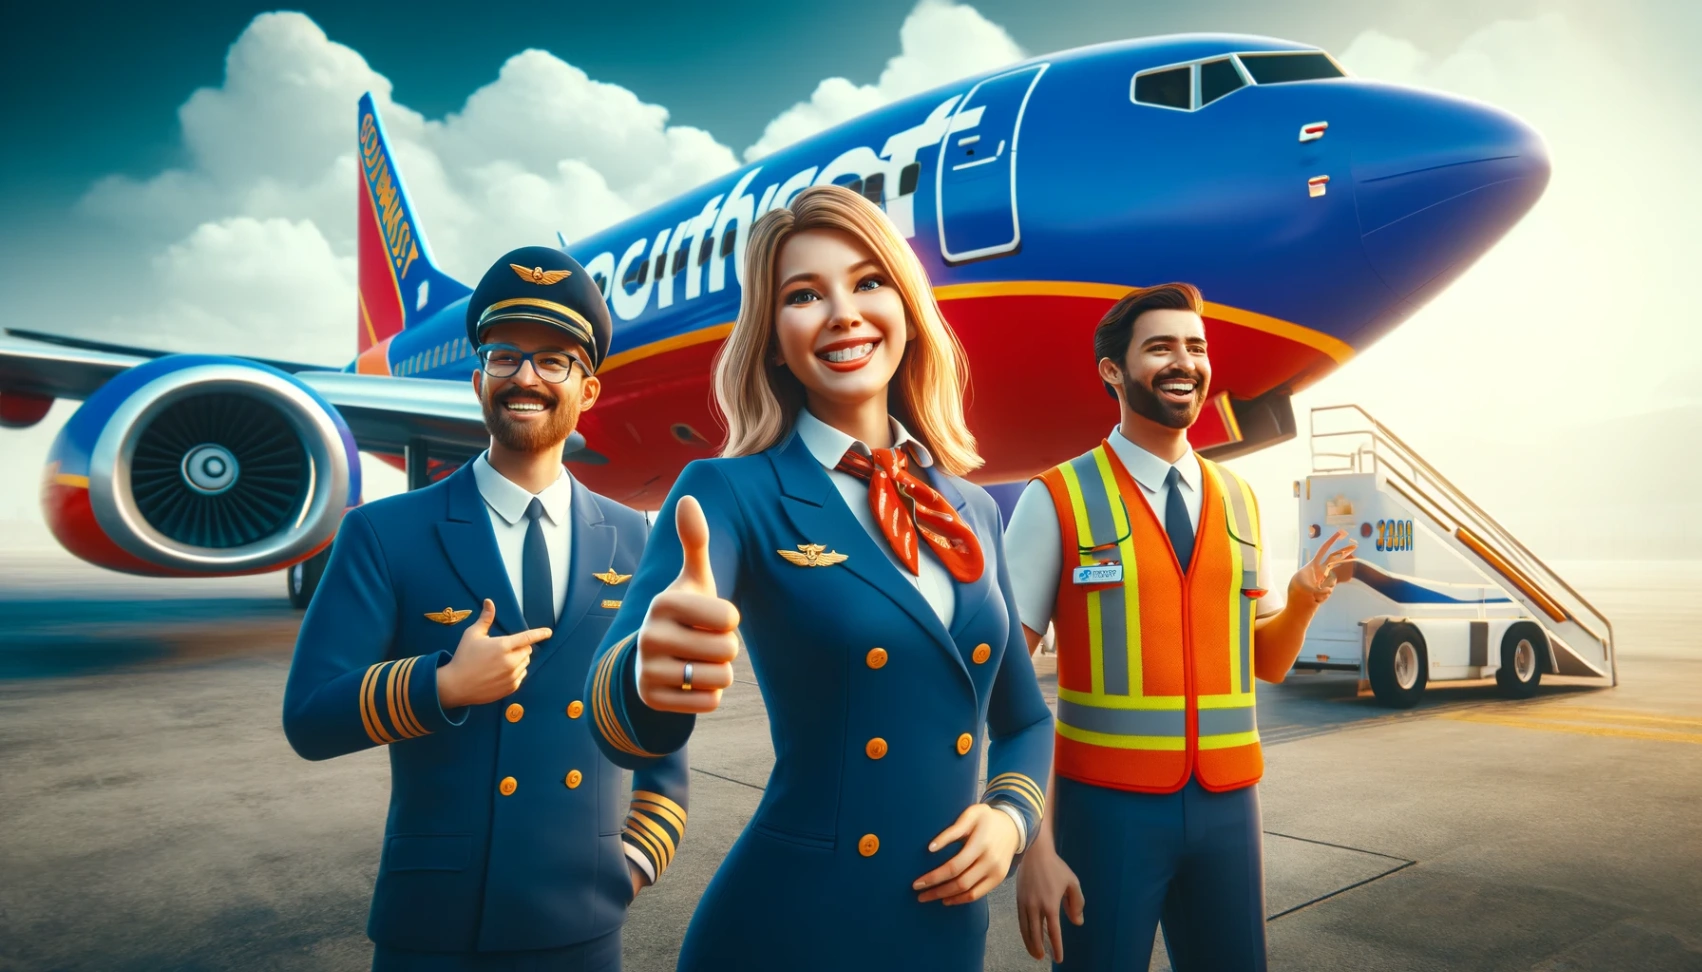 Oferty pracy w Southwest Airlines: Dowiedz się, jak aplikować